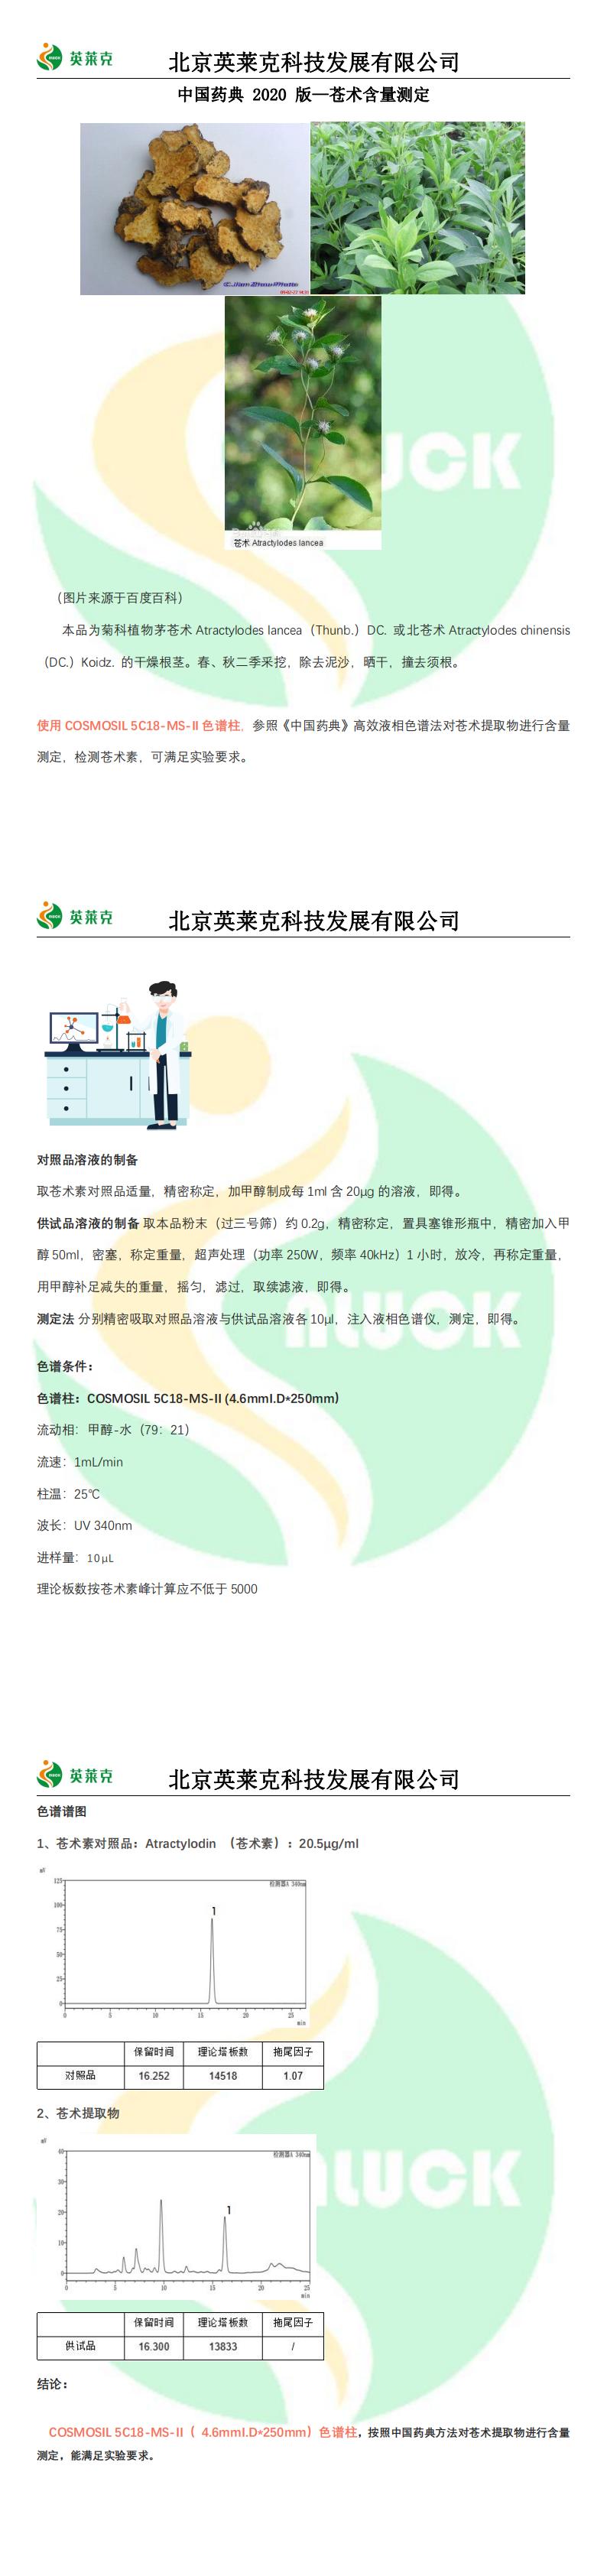 中国药典 2020 版—苍术含量测定_00